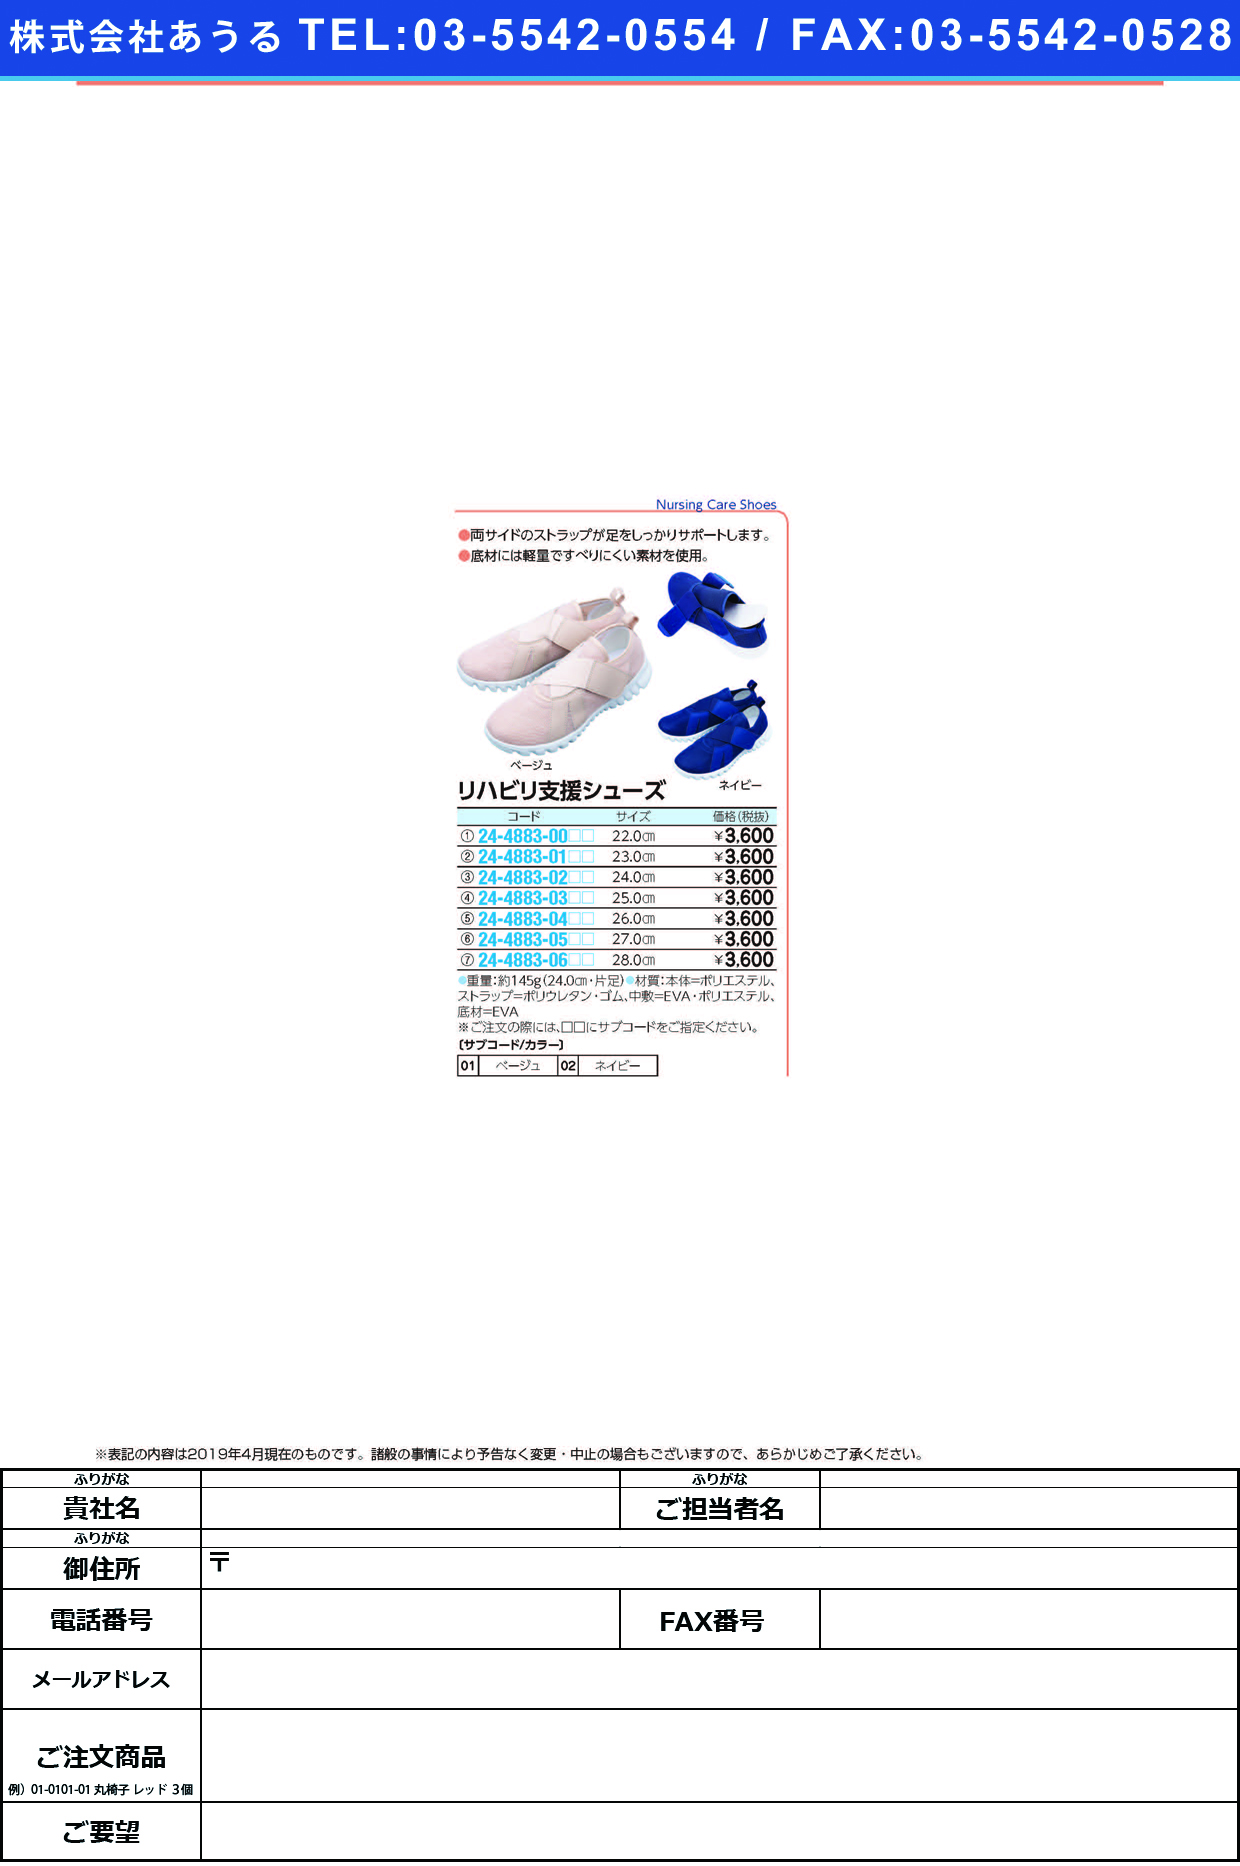 (24-4883-00)リハビリ支援シューズ 22.0CM ﾘﾊﾋﾞﾘｼｴﾝｼｭｰｽﾞ ベージュ【1足単位】【2019年カタログ商品】